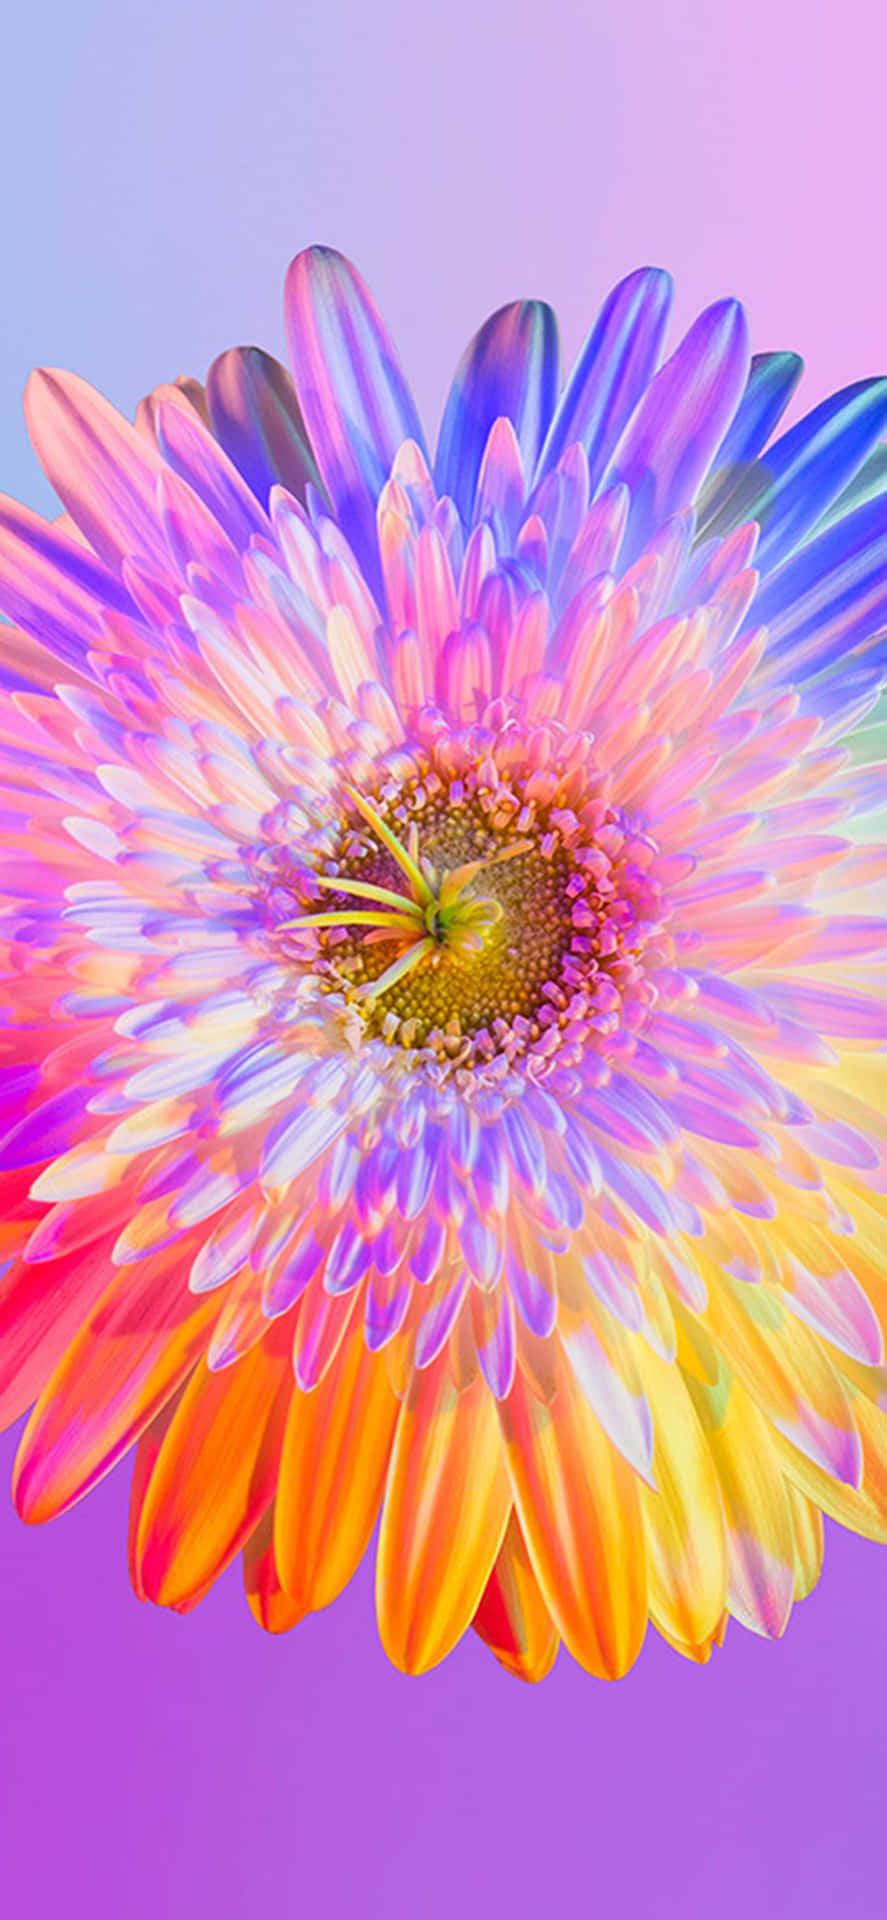 Machensie Ihren Tag Mit Diesem Wunderschönen Regenbogenblumen-iphone-hintergrundbild Auf! Wallpaper